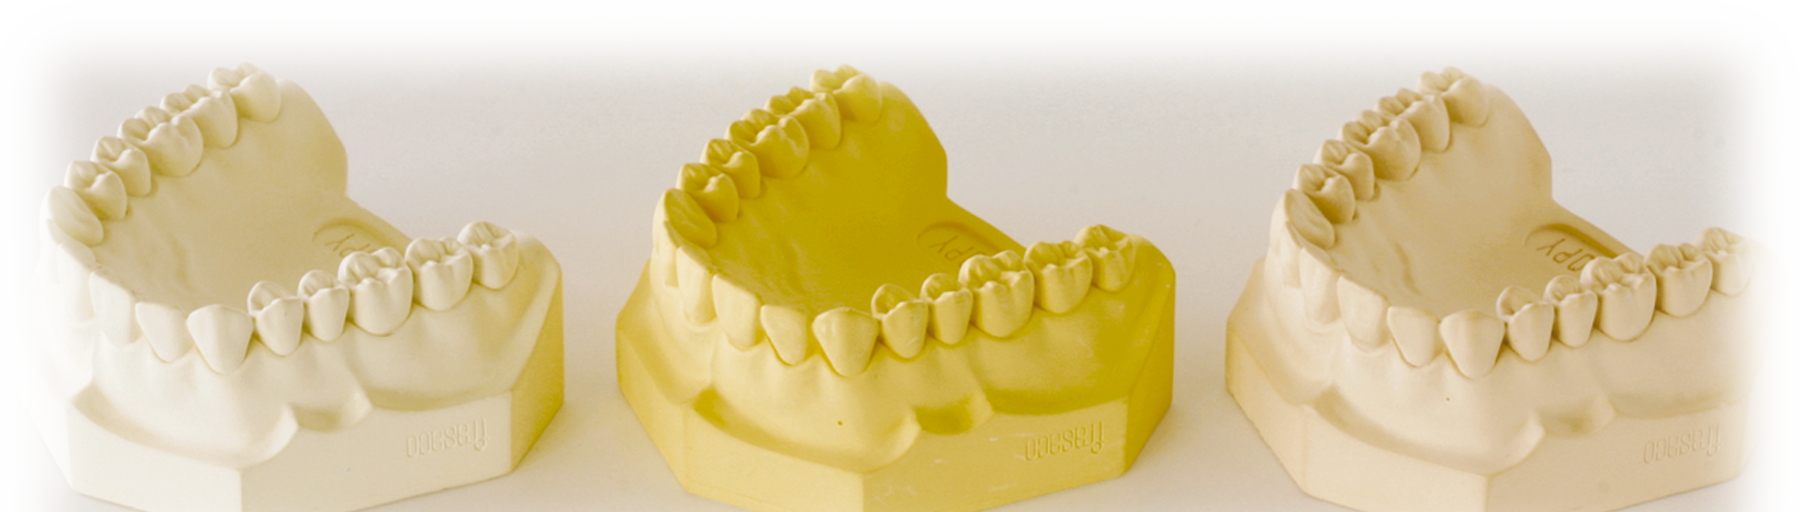 Orthodontic Plaster